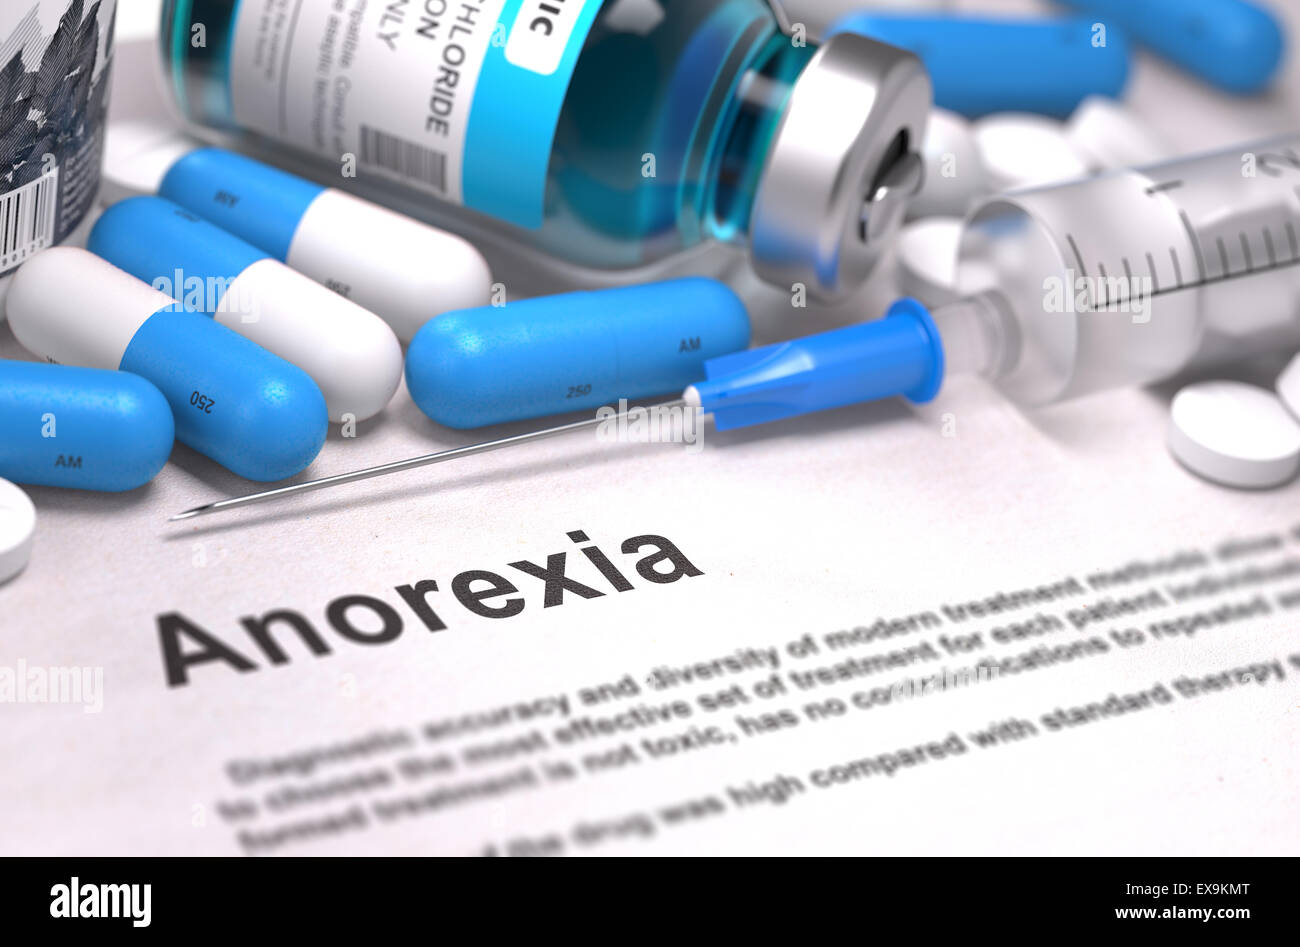 Diagnosi - anoressia. Concetto medico. Foto Stock